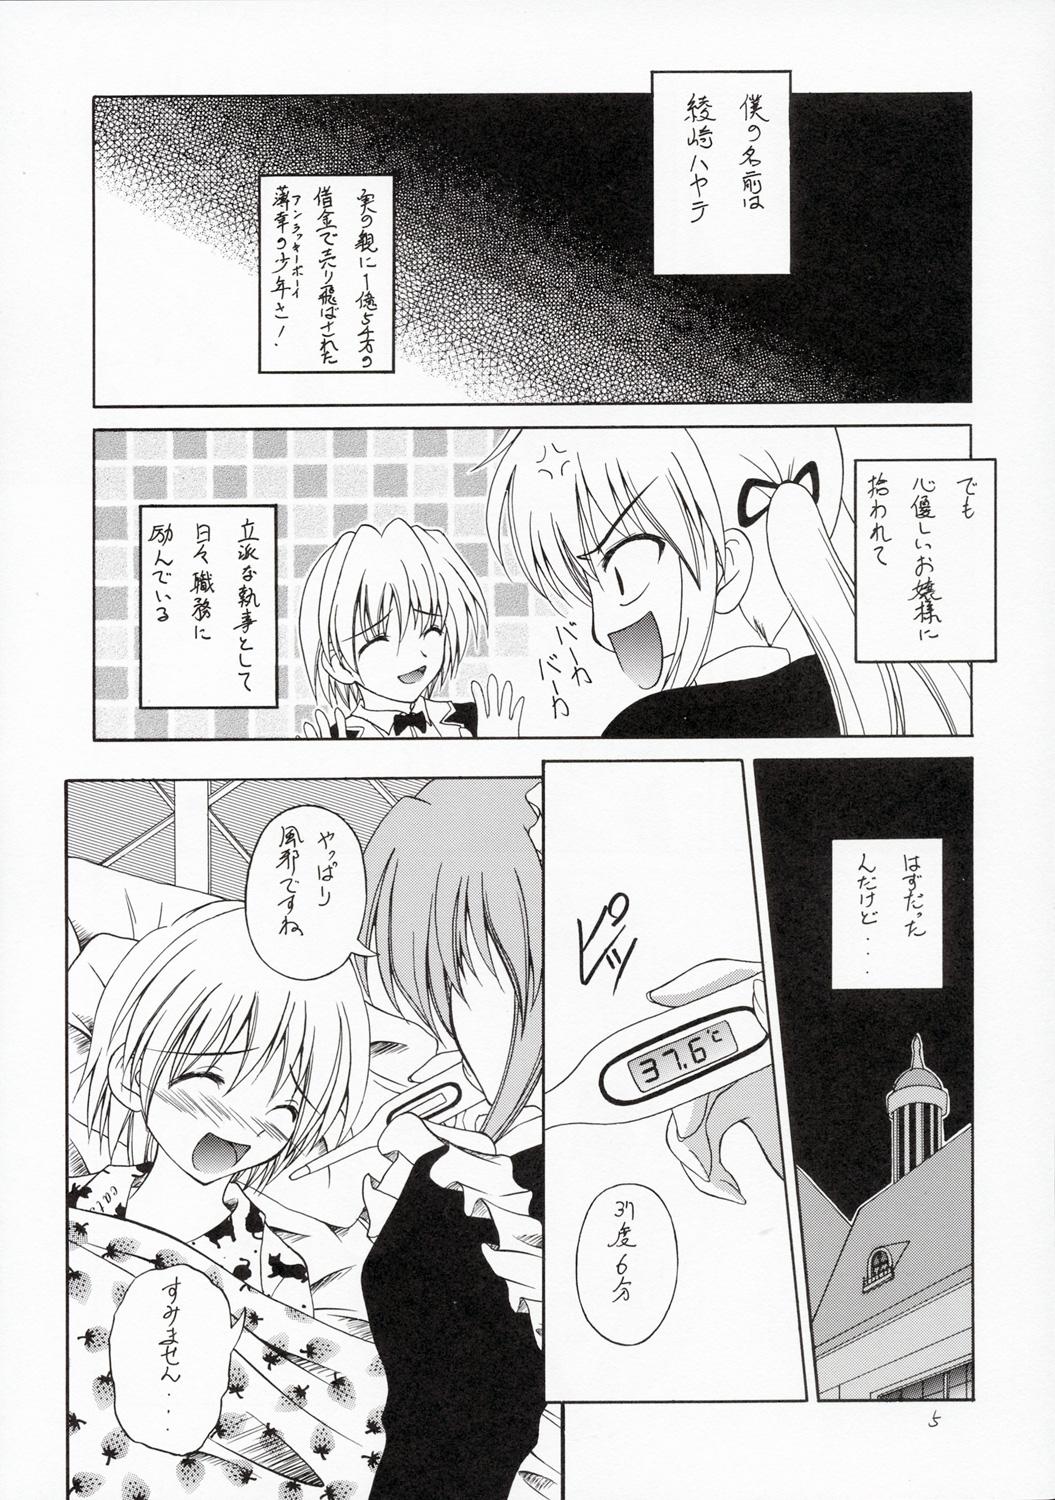 Com Hayate no Gotoshi!? - Hayate no gotoku Pervs - Page 4